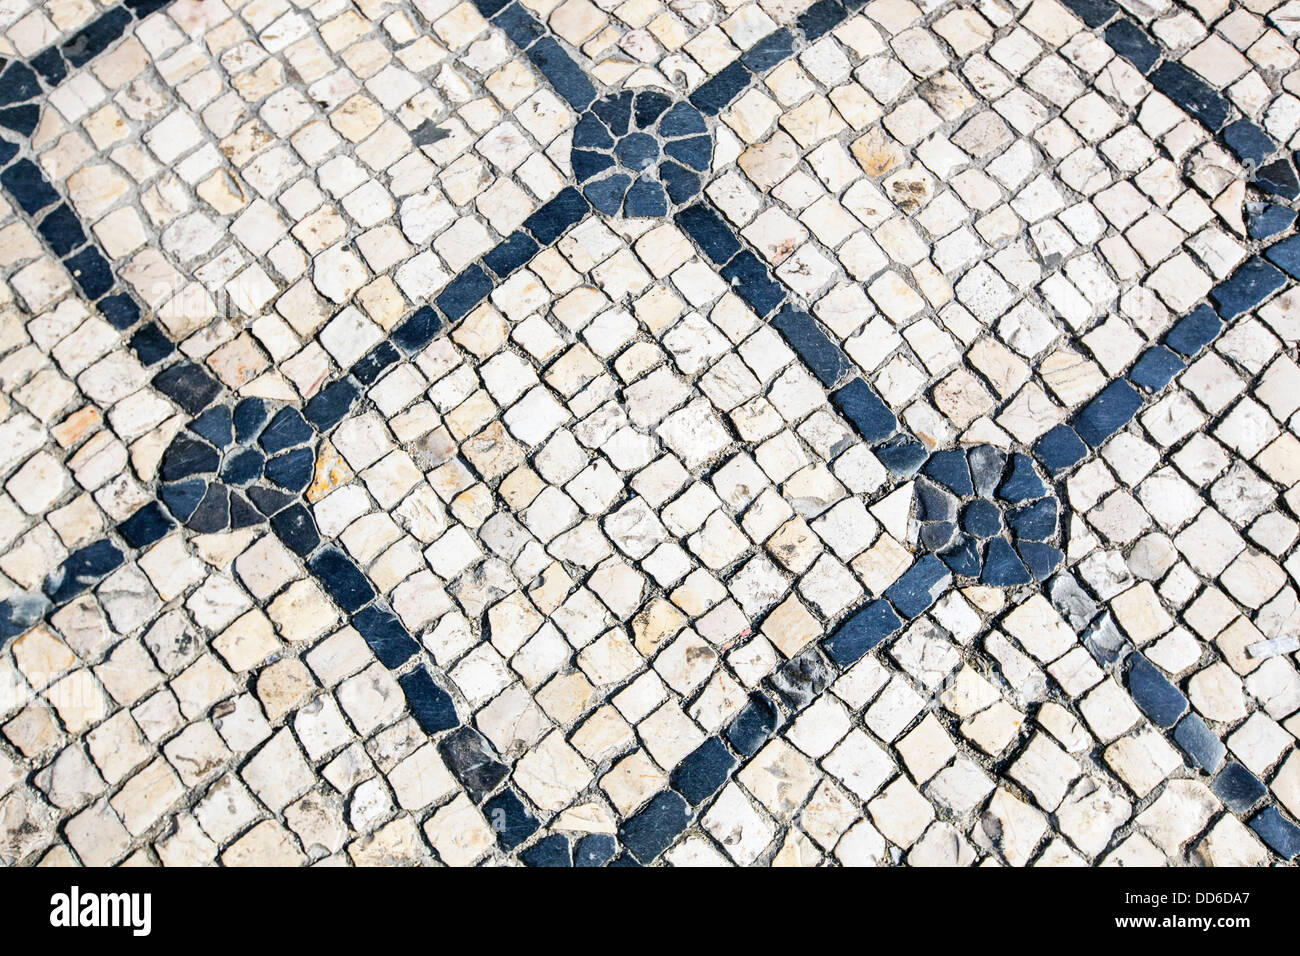 La chaussée portugaise, Lisbonne, Portugal, Europe Banque D'Images